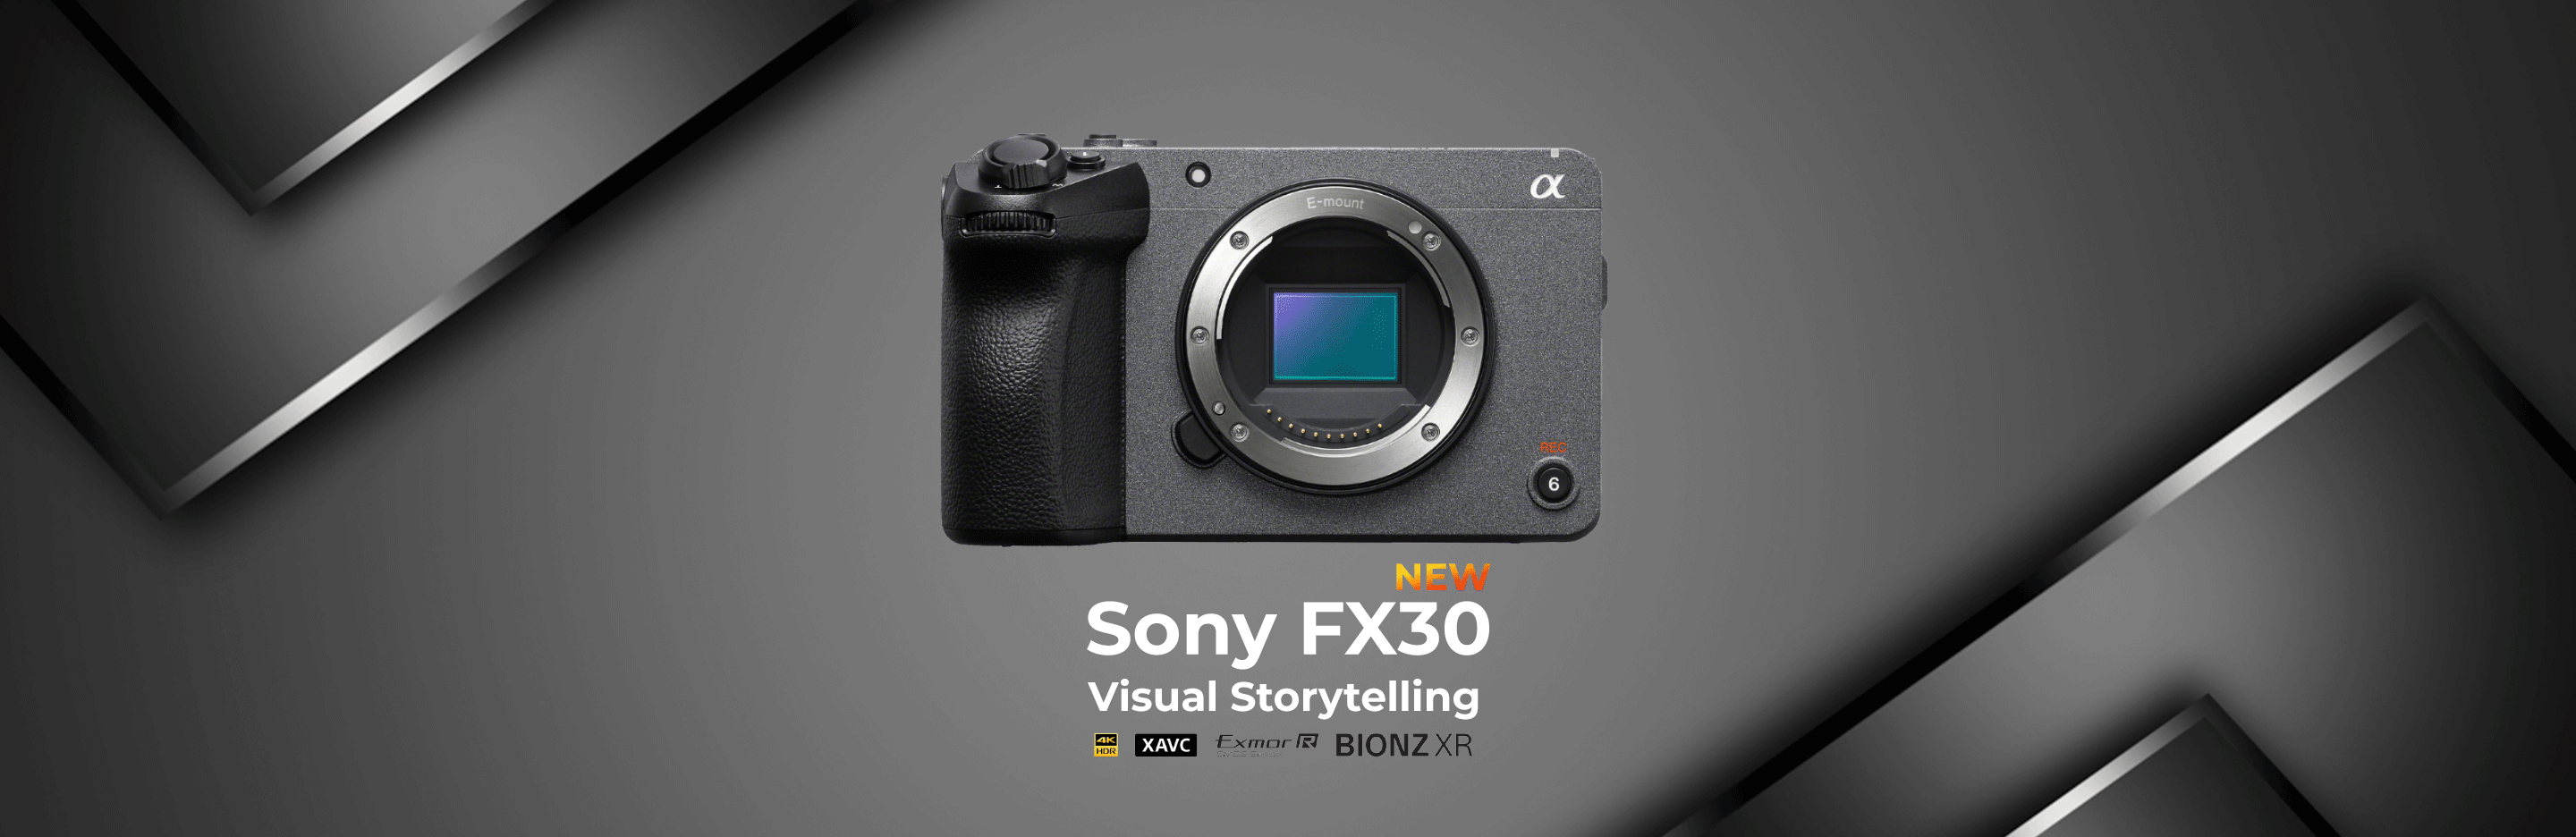 Sony FX30 Visual Storytelling 